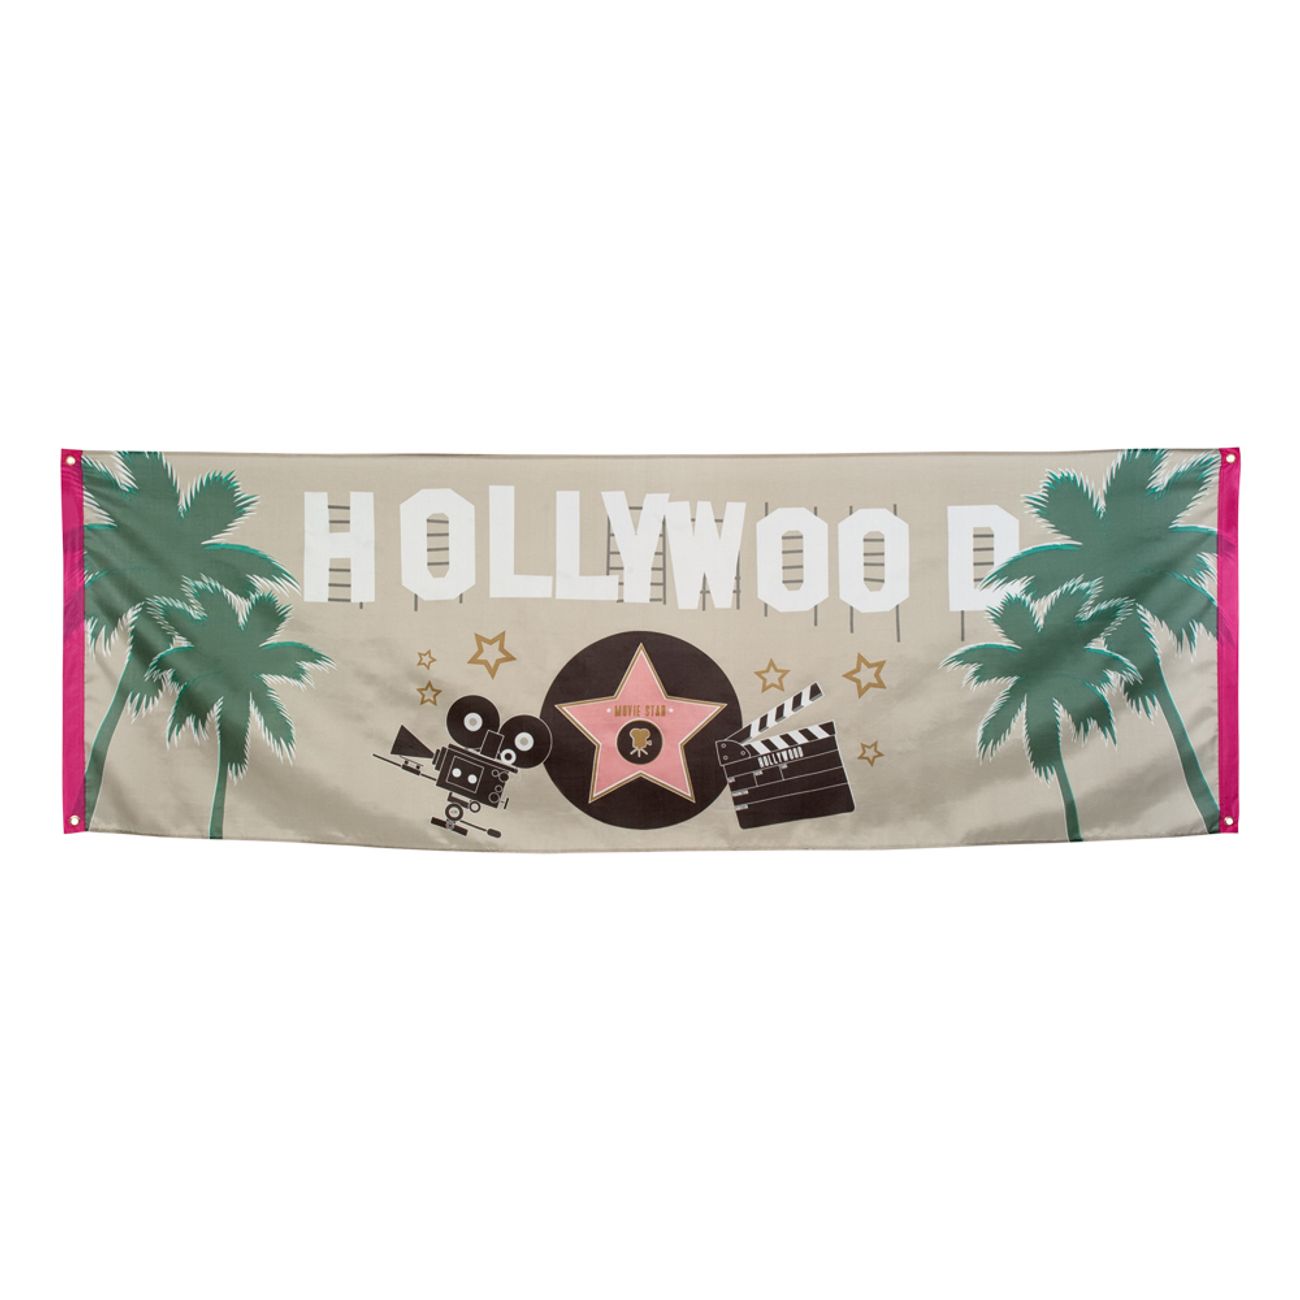 hollywood-banner-1